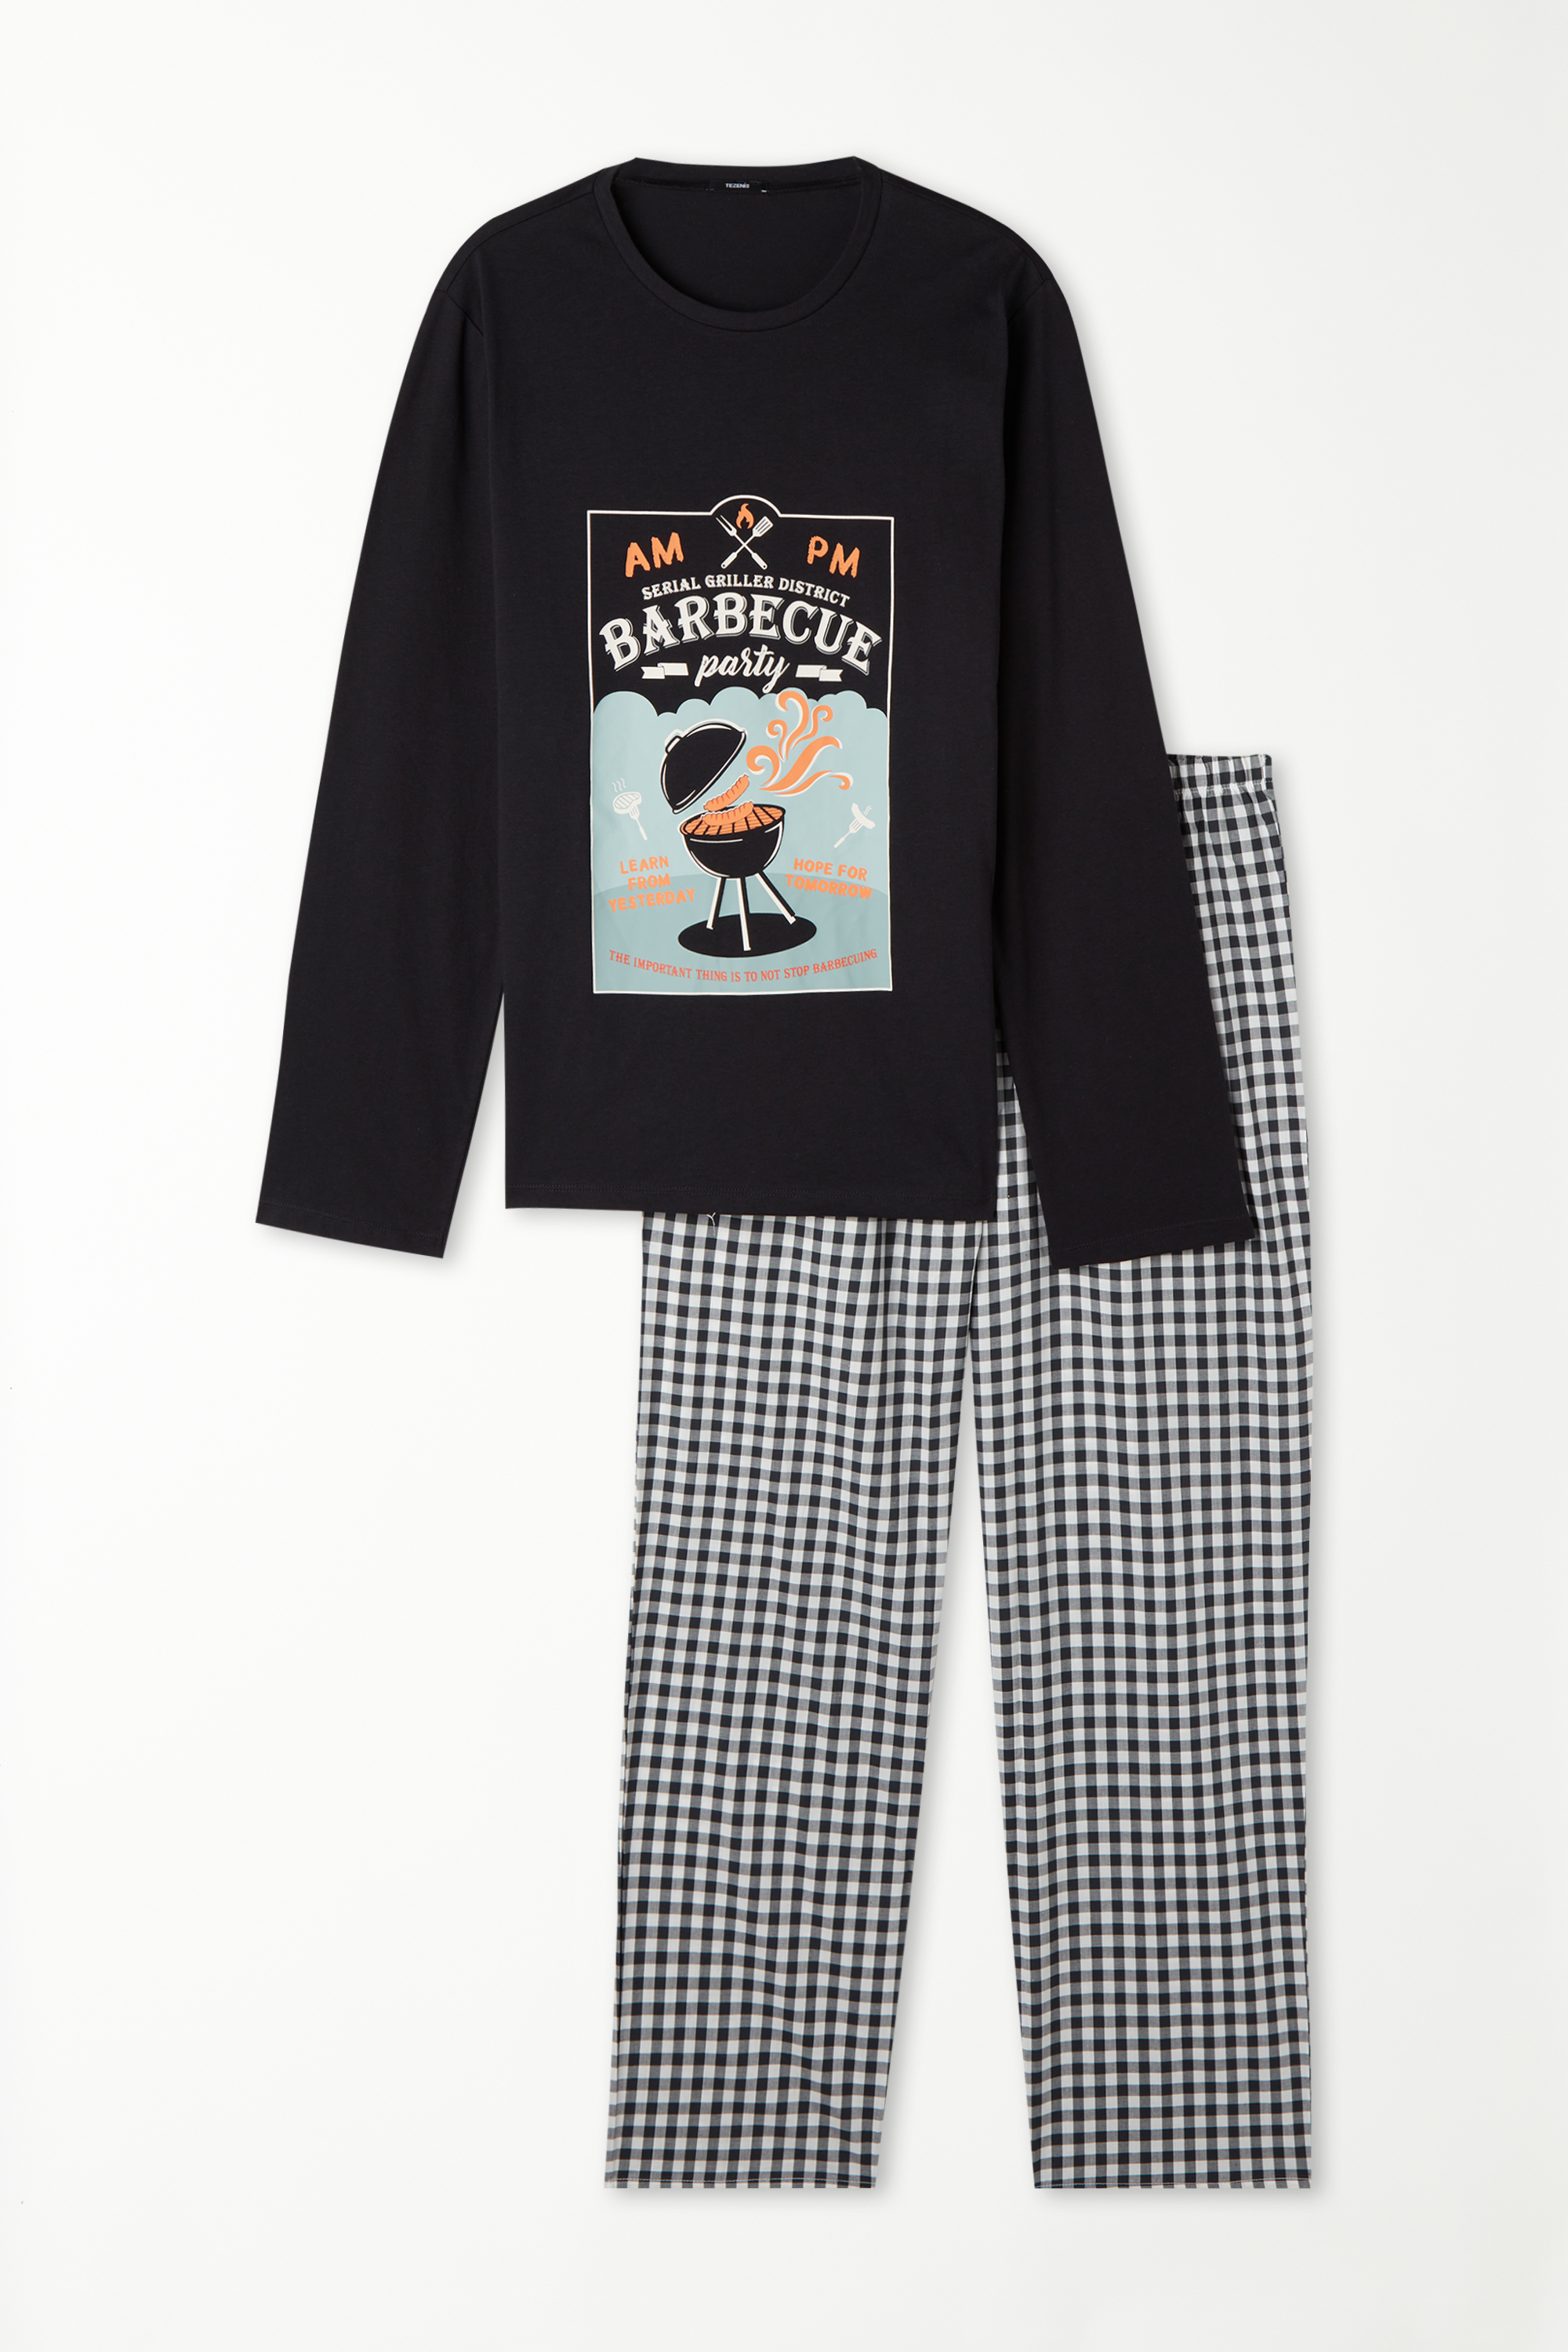 Langer Pyjama aus Baumwolle mit Barbecue-Print